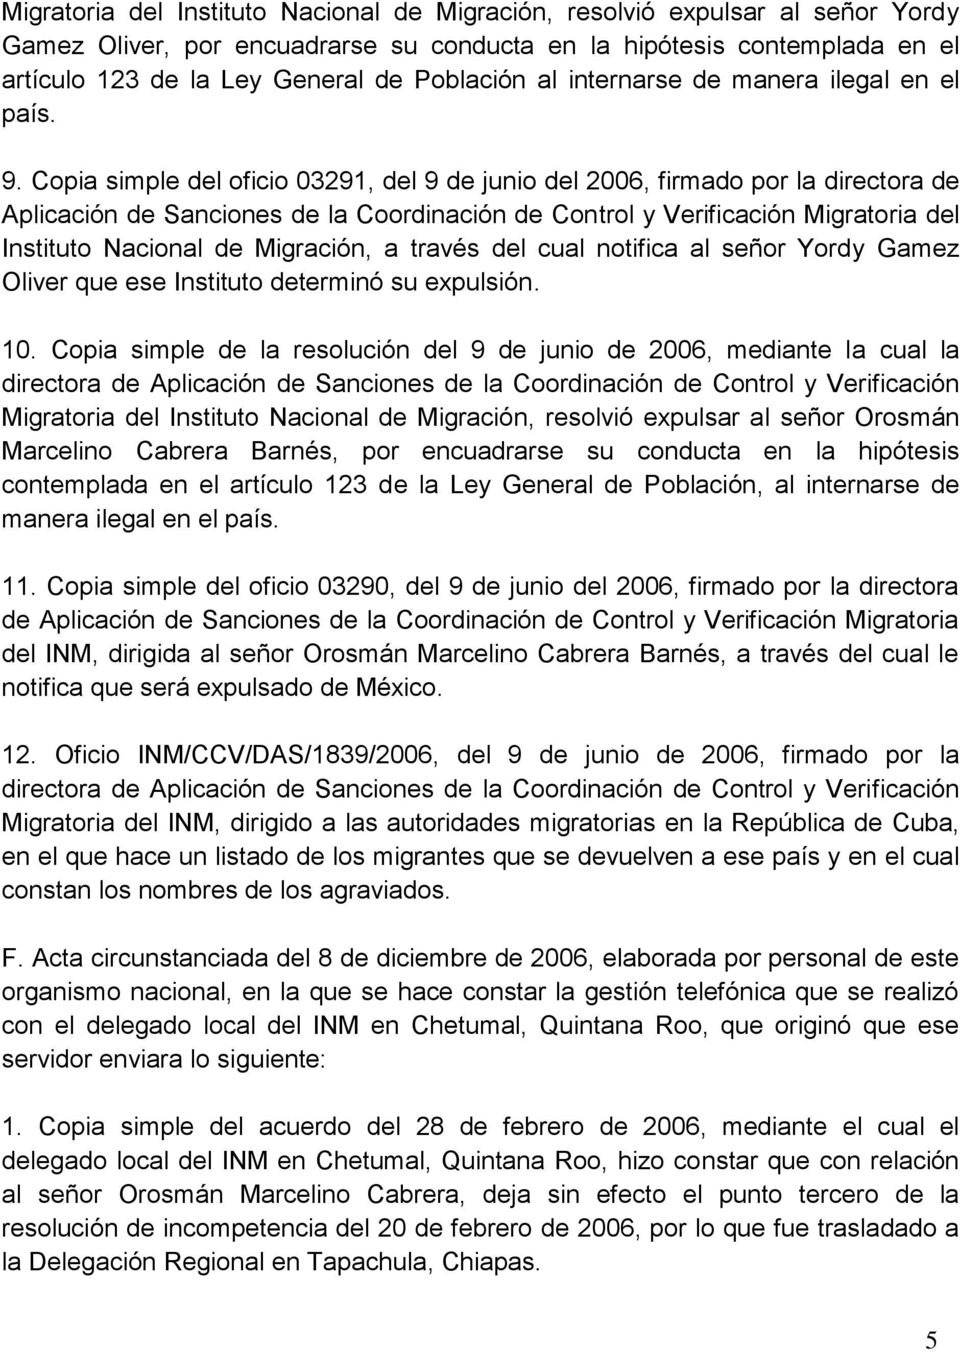 Copia simple del oficio 03291, del 9 de junio del 2006, firmado por la directora de Aplicación de Sanciones de la Coordinación de Control y Verificación Migratoria del Instituto Nacional de